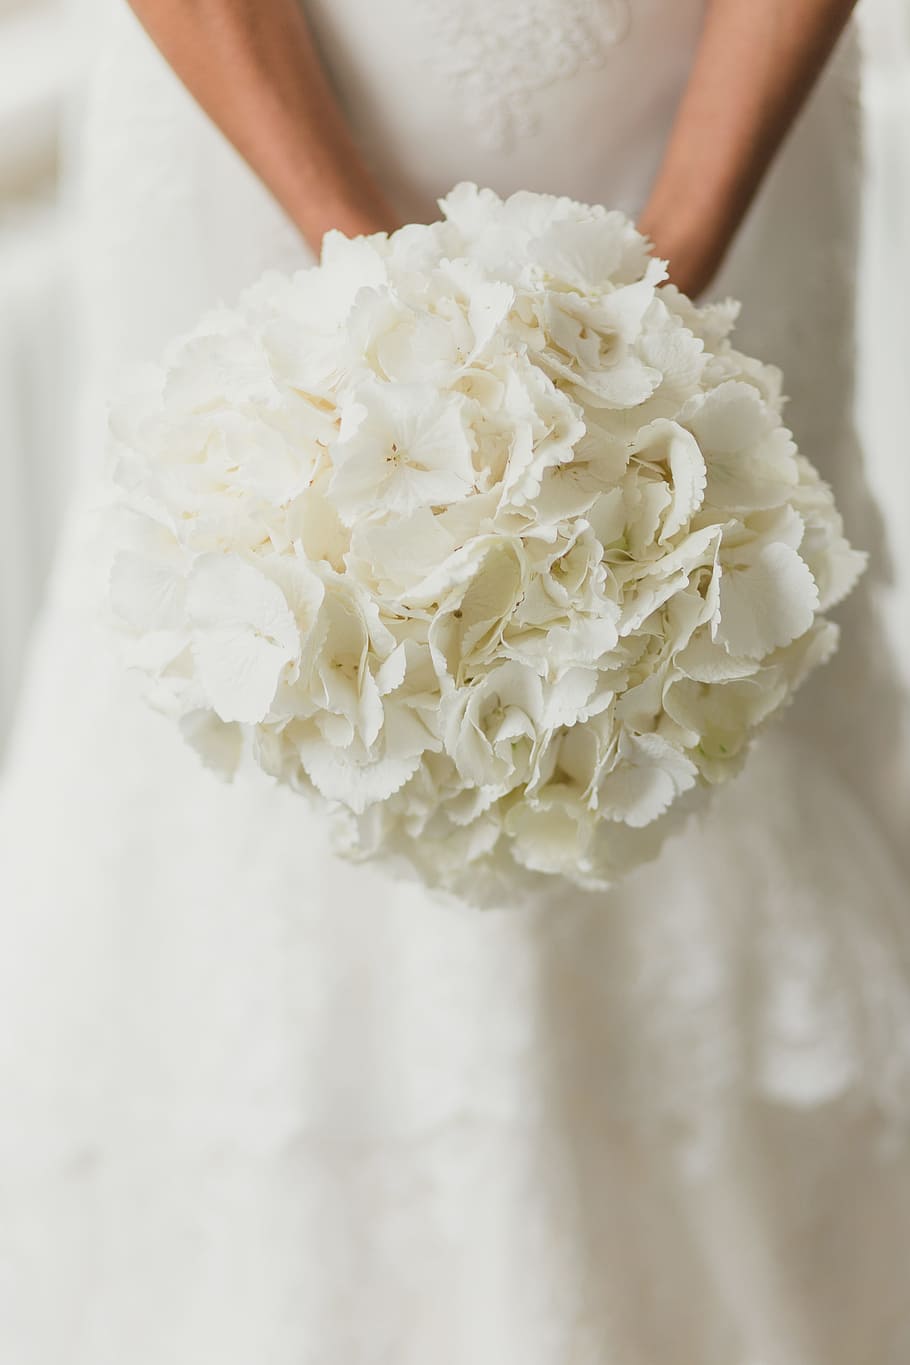 wedding bouquet, flowers, bride, white, romantic, love, bouquet, woman, female, people